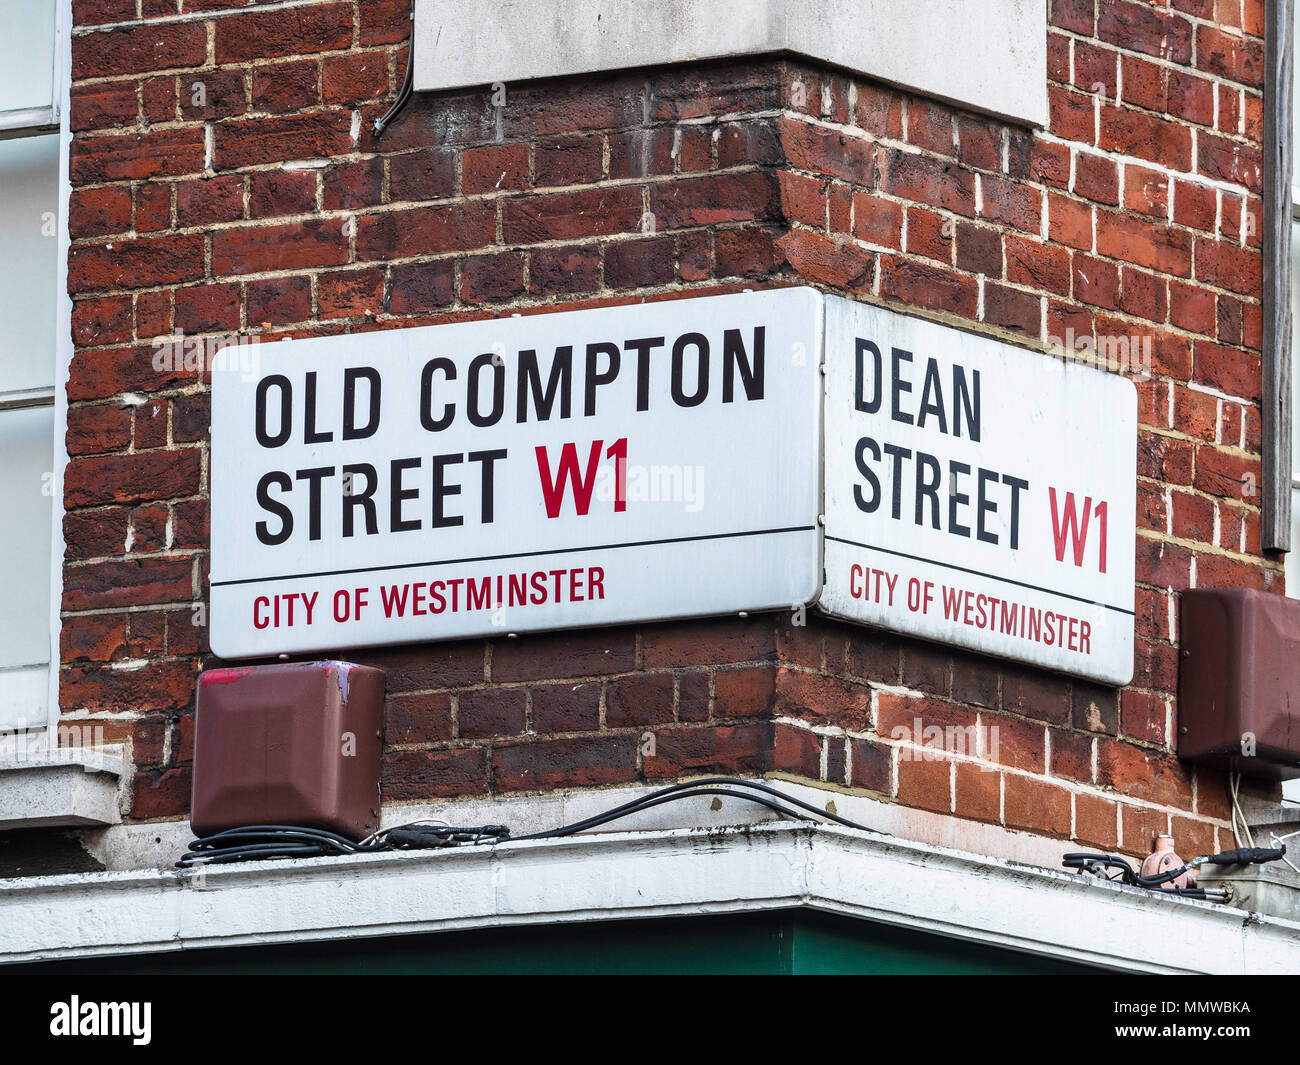 Soho Street serie di segni - Old Compton Street / Old Compton St & Dean Street / Dean St - Londra quartiere Soho di segnaletica stradale Foto Stock